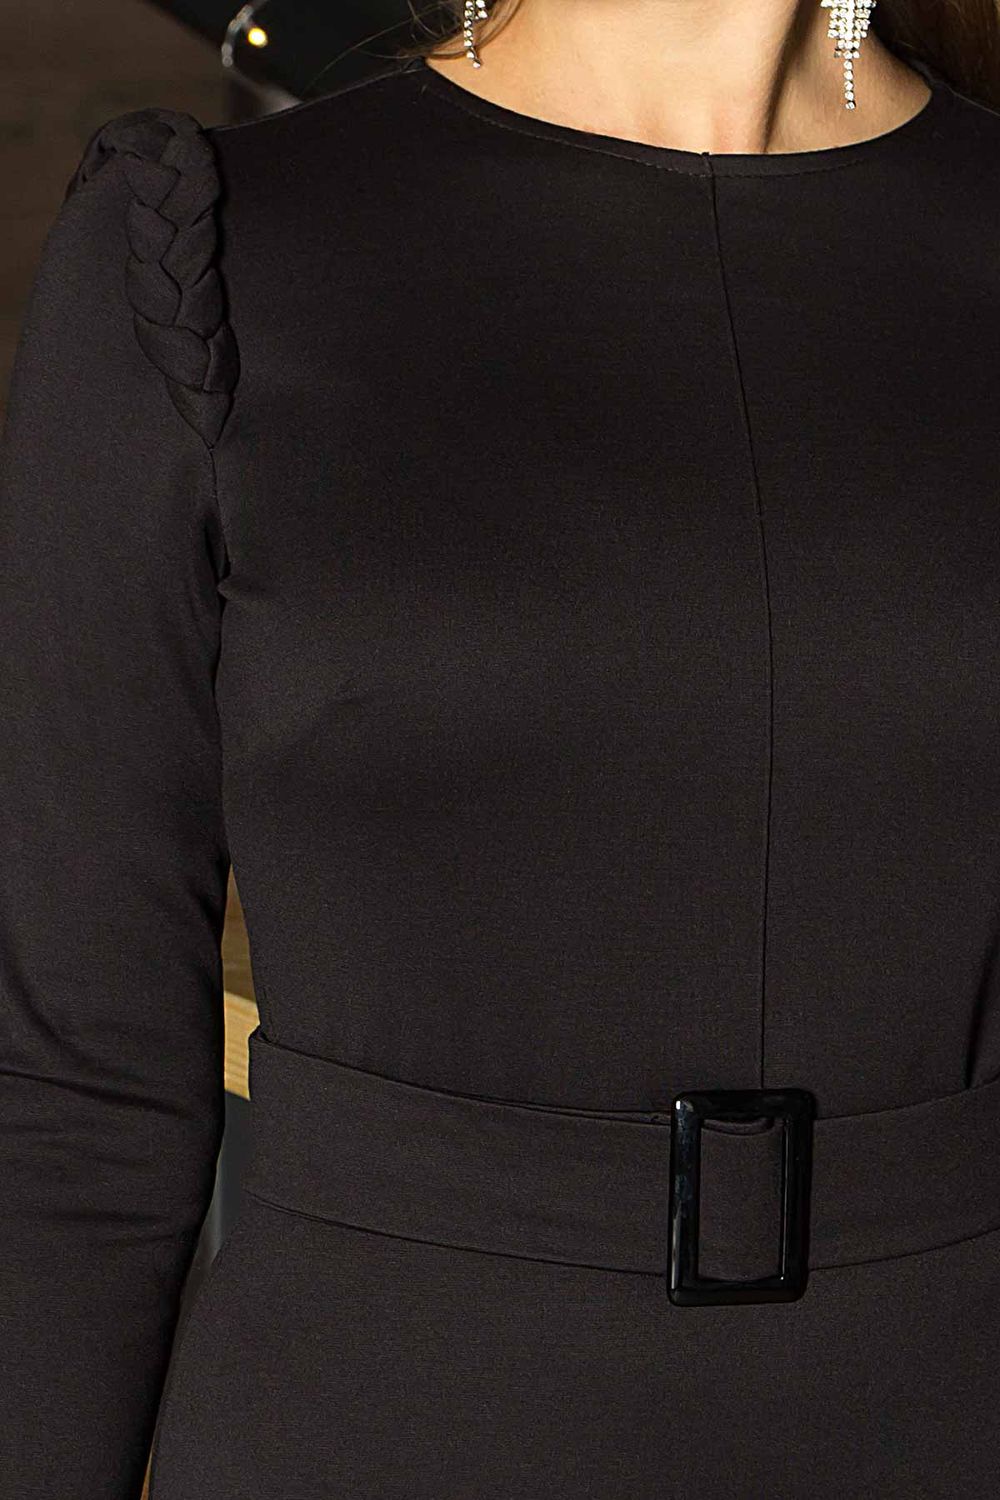 Витончена чорна сукня міді зі спідницею сонце - фото